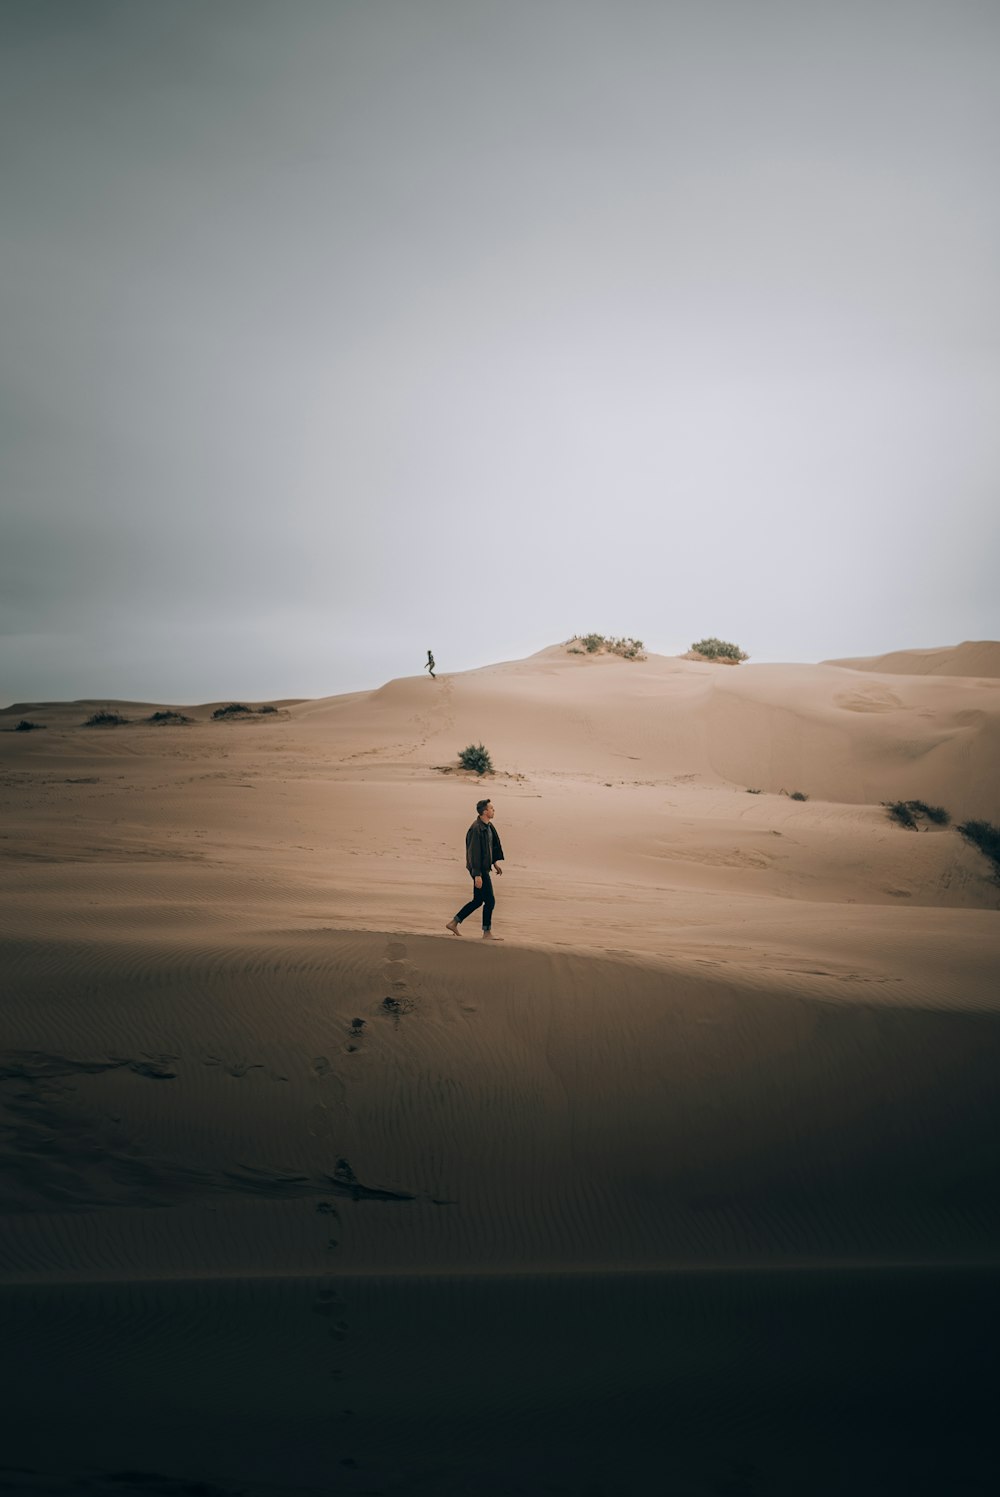 a man walking across a sandy desert under a cloudy sky